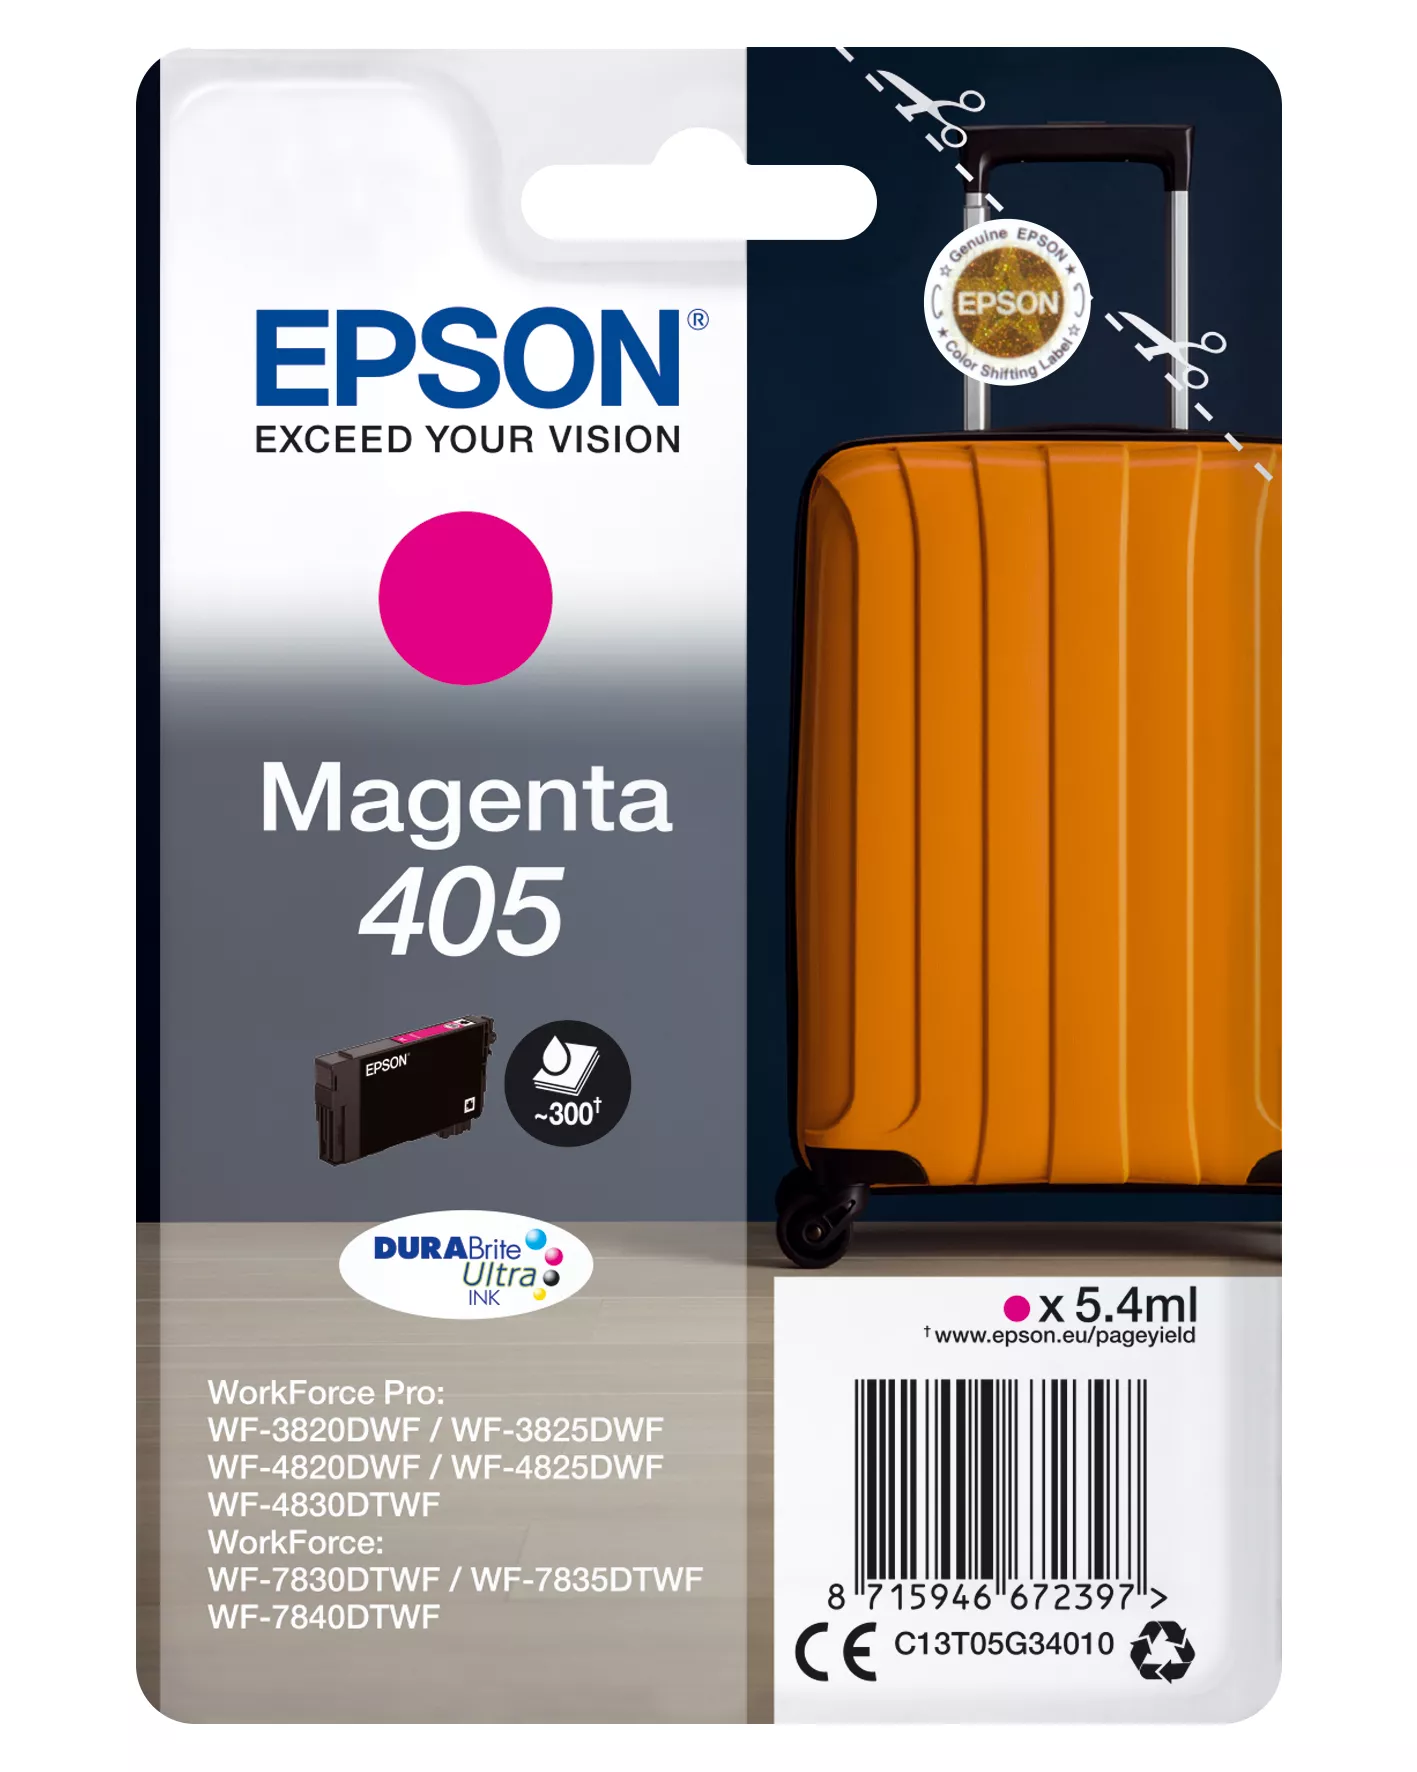 Achat EPSON Singlepack Magenta 405 DURABrite Ultra Ink au meilleur prix